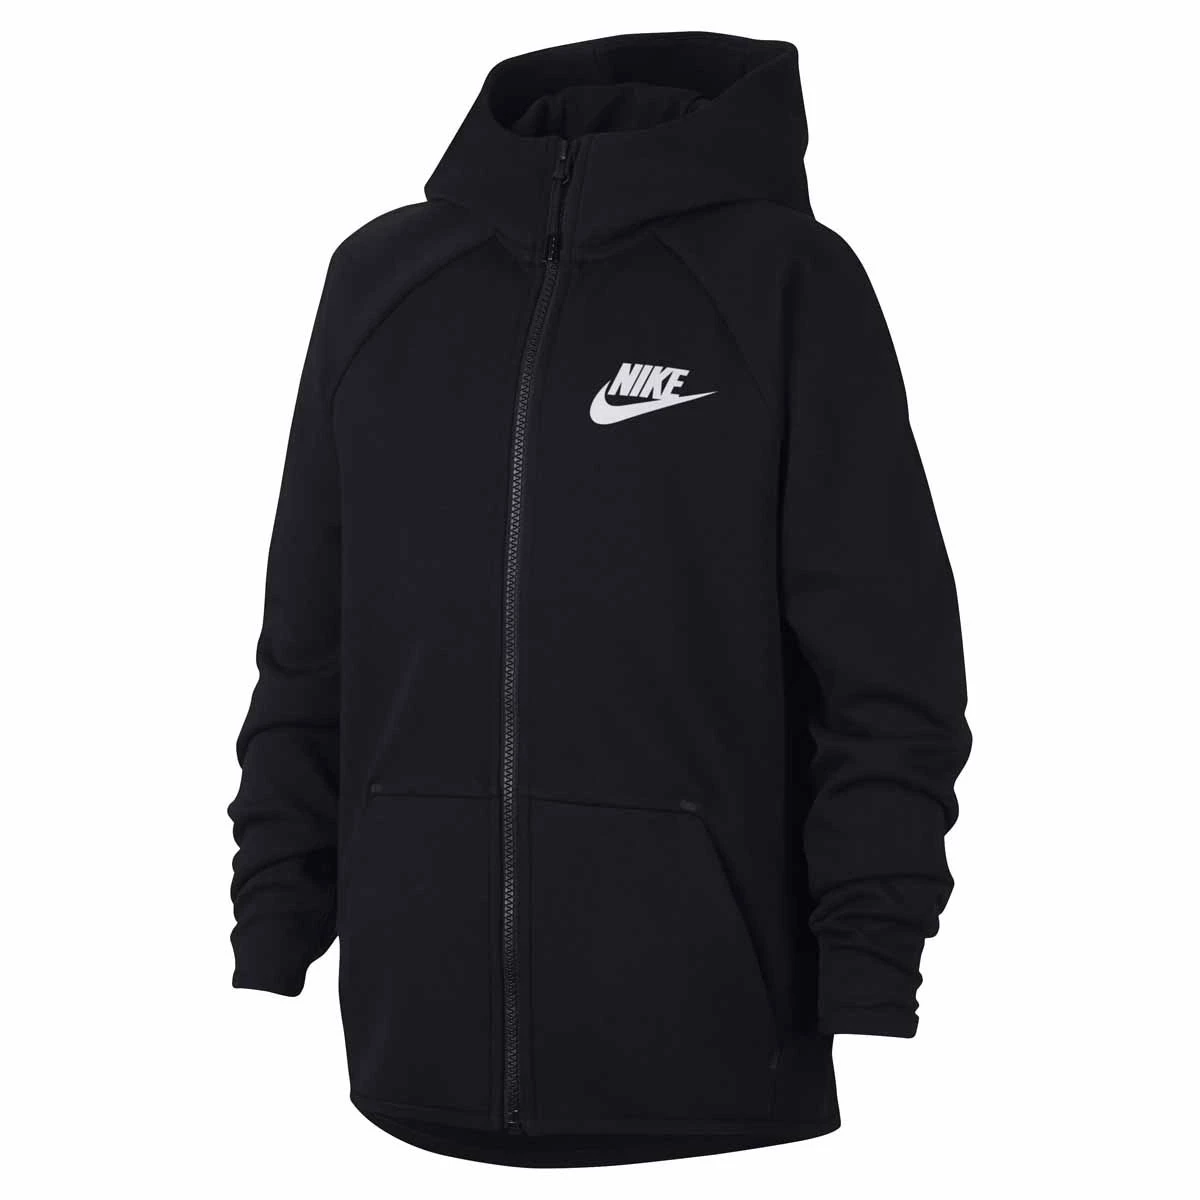 Afbeelding van Nike Tech fleece full-zip hoodie